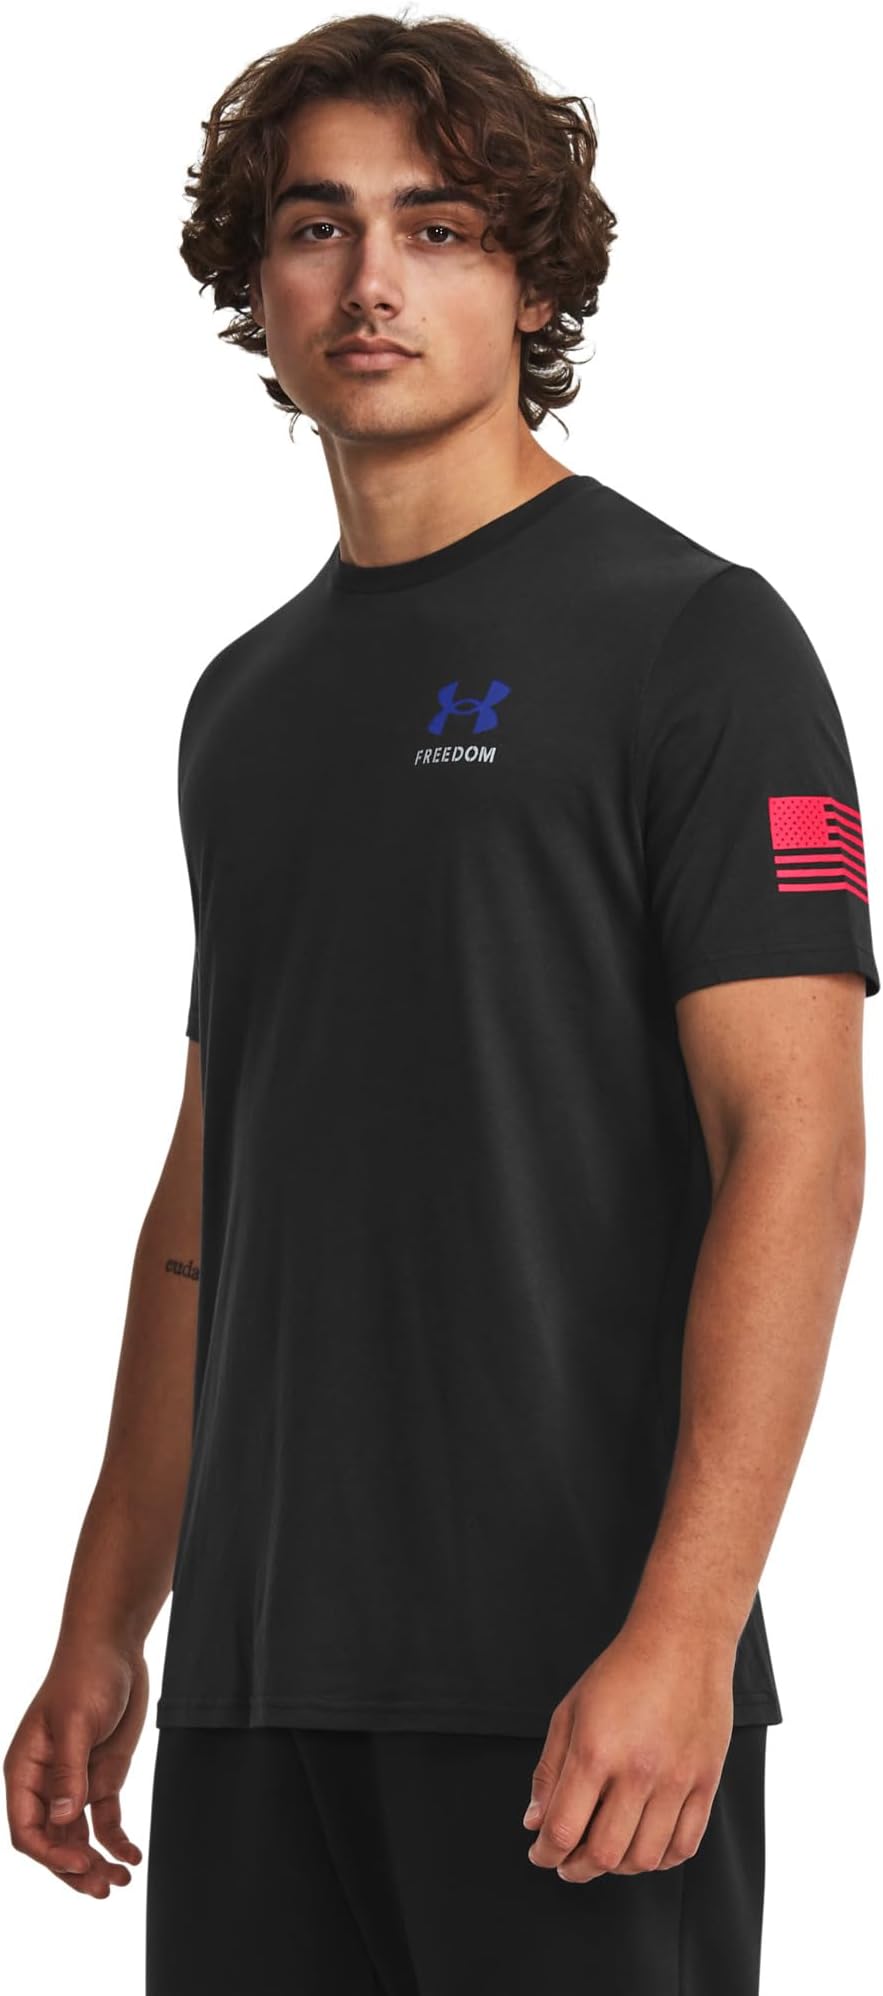 Новая футболка со знаменем свободы Under Armour, цвет Black/Steel 1 цена и фото